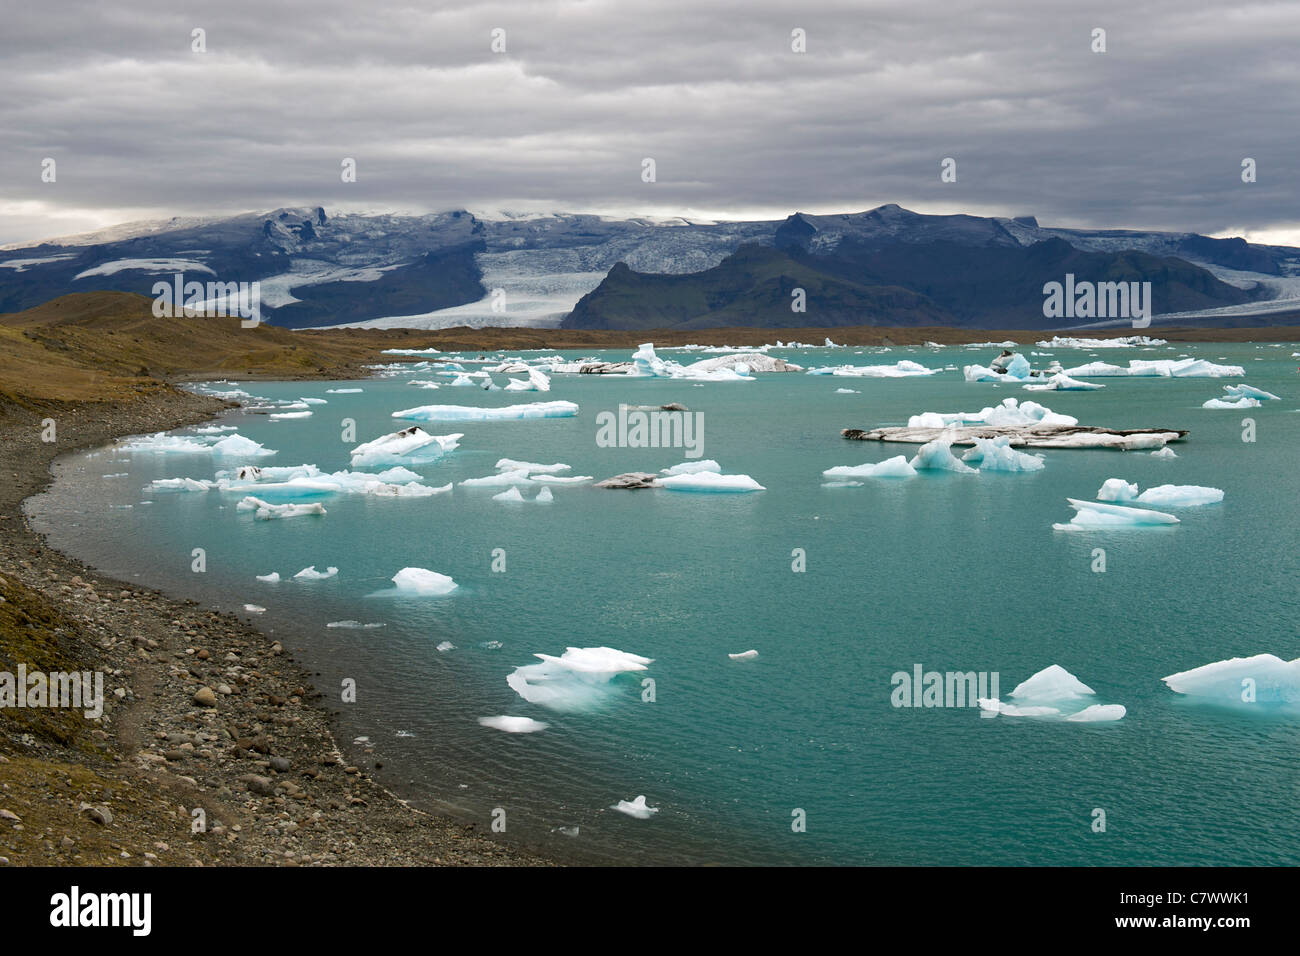 Les icebergs flottant dans le lac Jokullsarlon au pied de l'énorme glacier de Vatnajokull dans le sud-est de l'Islande. Banque D'Images